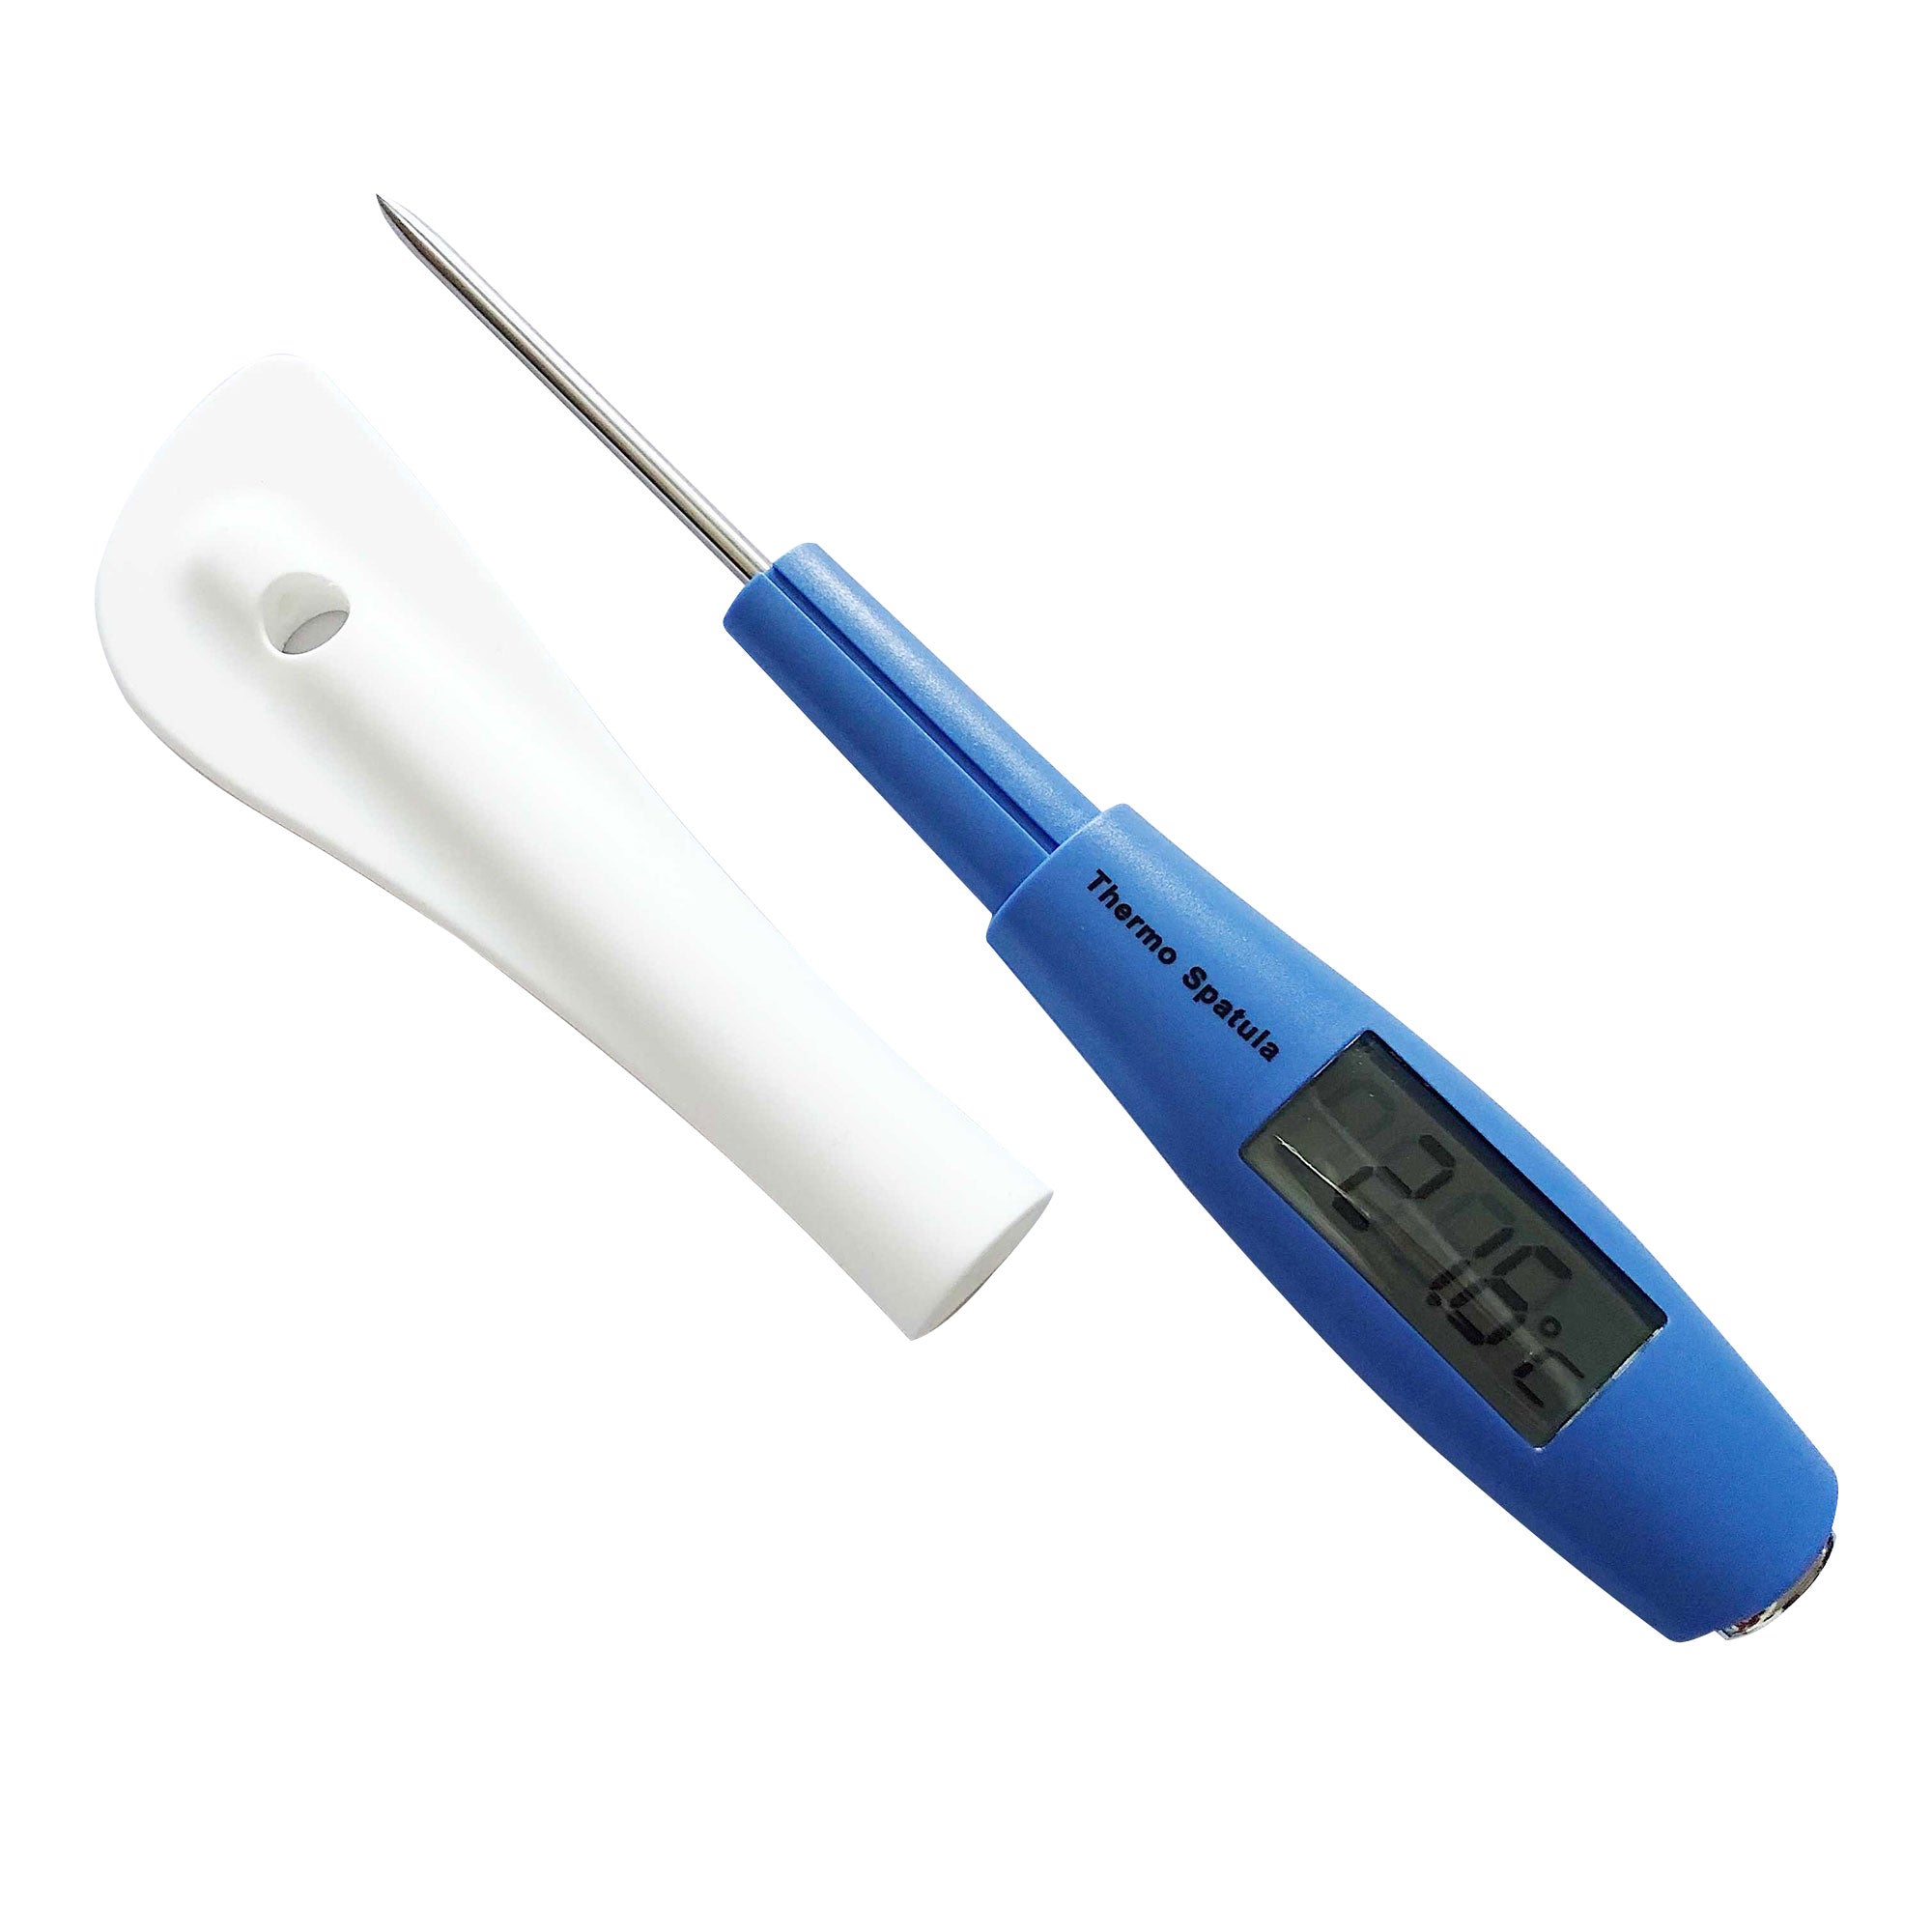 Thermospatula Silicone Spatula & Thermometer